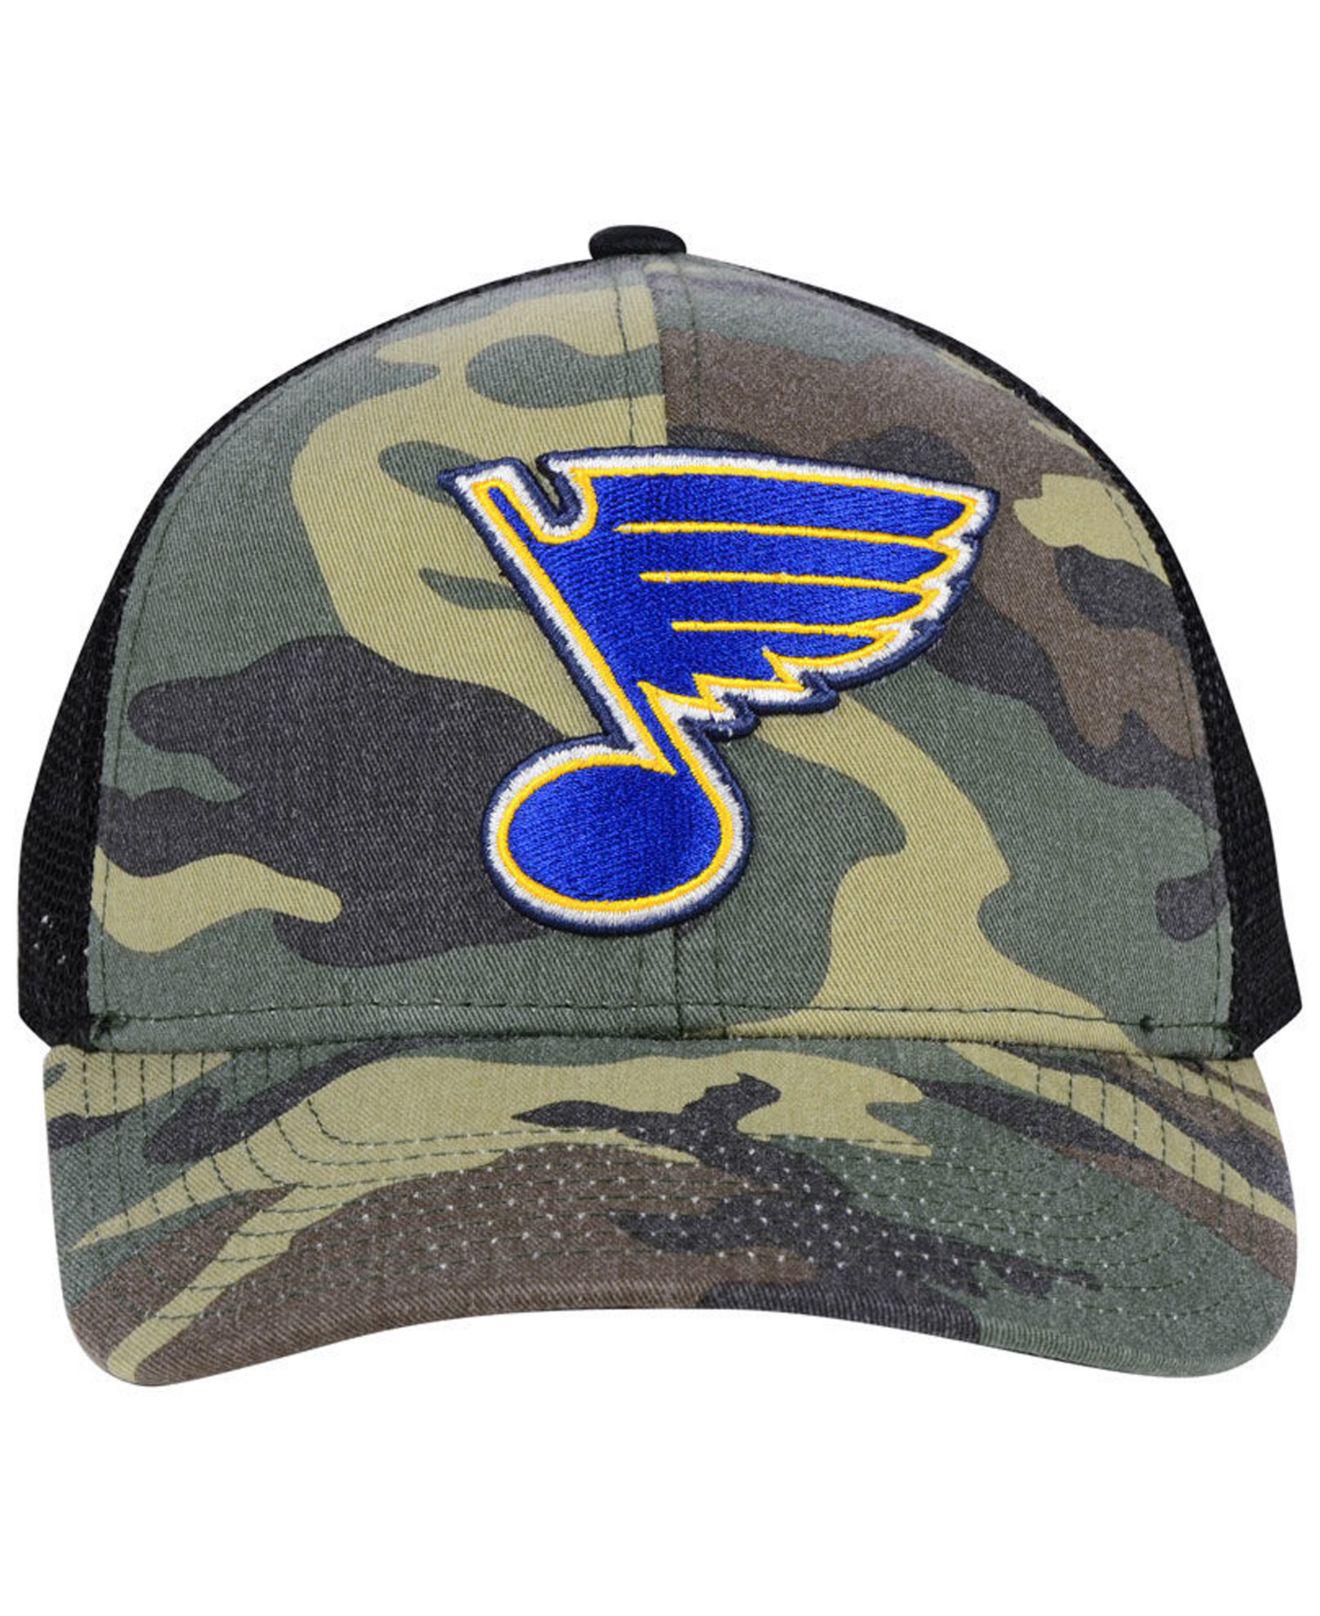 Men's Adidas Camo/Black St. Louis Blues Military Appreciation Flex Hat Size: Medium/Large